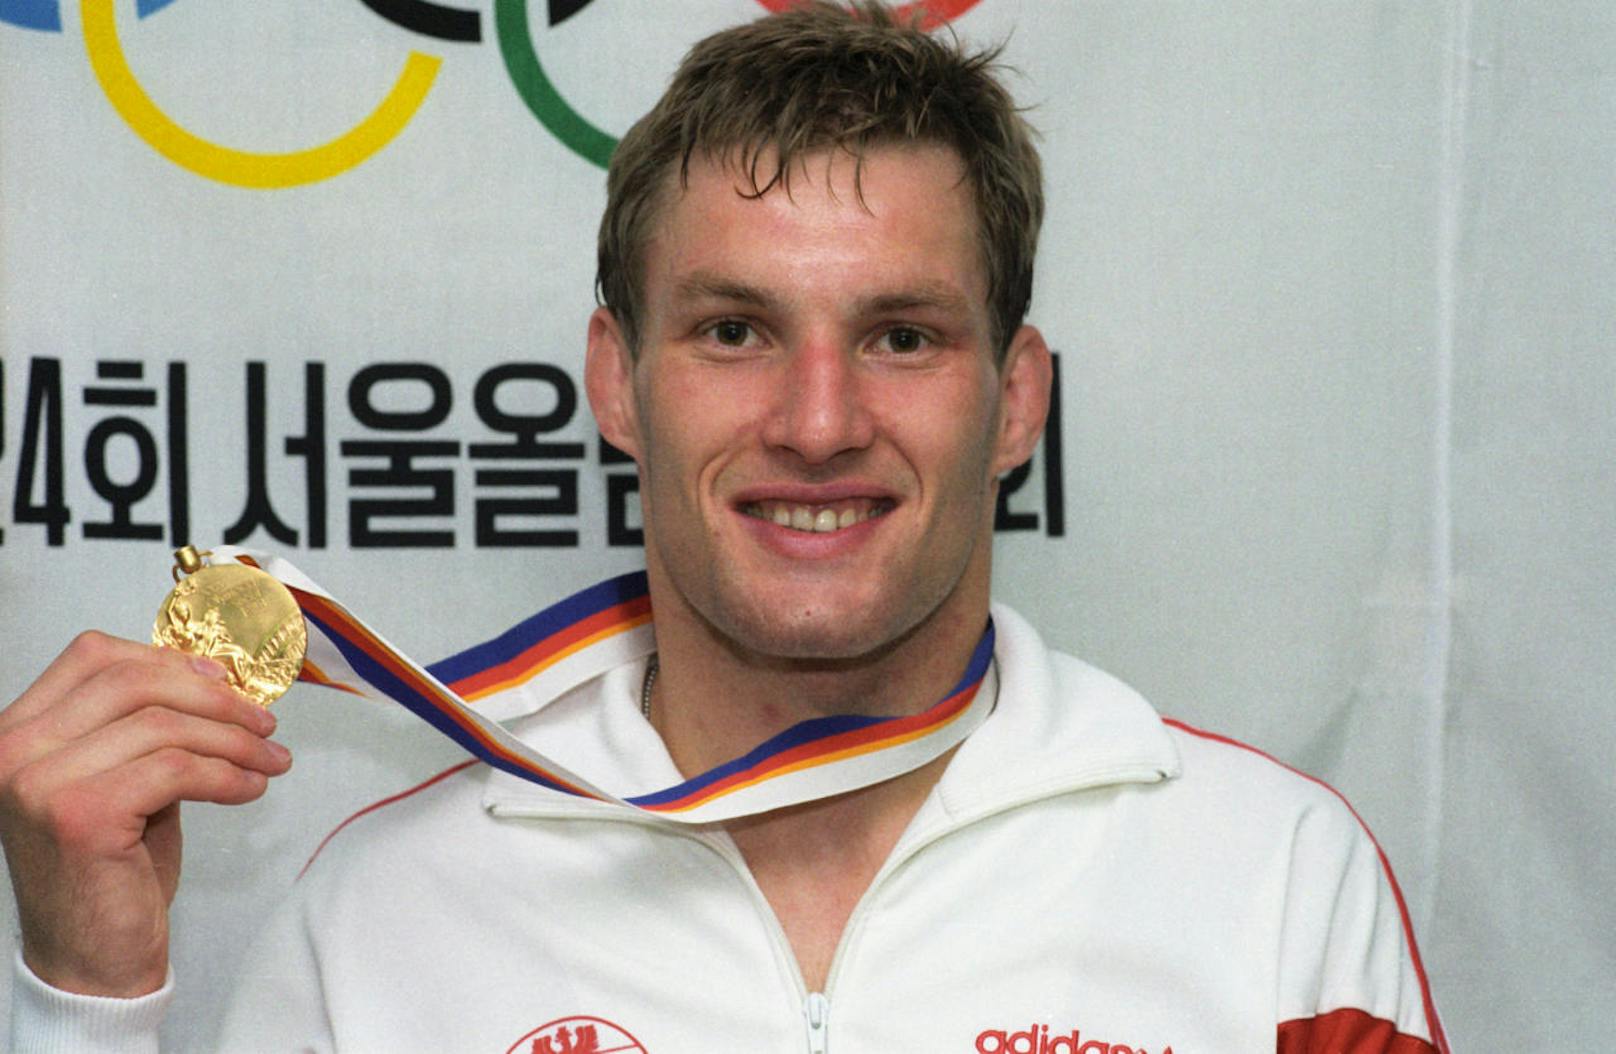 Weitere vier Jahre später die große Sensation. Seisenbacher verteidigt als erster Judoka der Geschichte seinen Titel, holt auch in Seoul 1988 Olympia-Gold.

Zwischen den beiden Olympiasiegen eroberte er 1985 in Seoul WM-Gold, wurde 1986 in Belgrad Europameister.